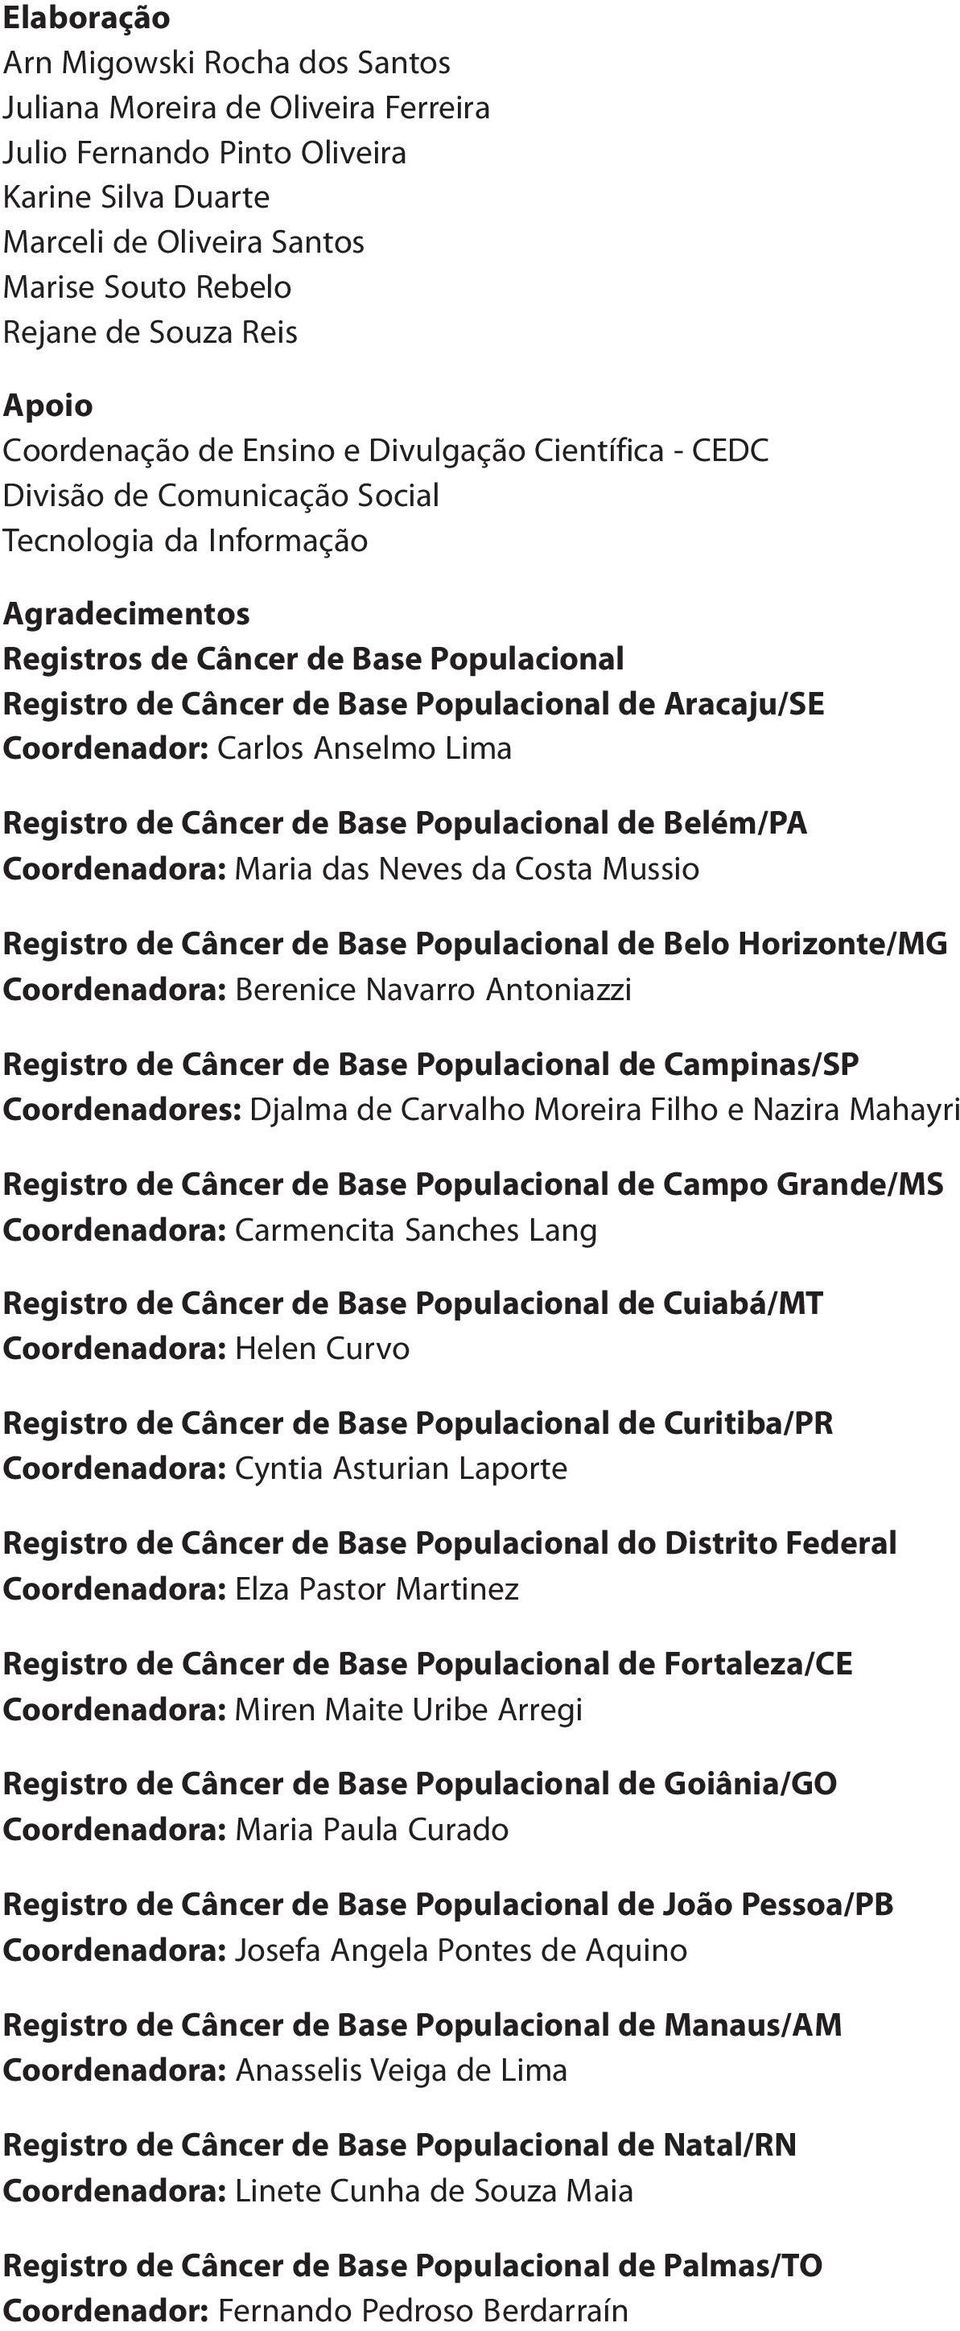 Populacional de Aracaju/SE Coordenador: Carlos Anselmo Lima Registro de Câncer de Base Populacional de Belém/PA Coordenadora: Maria das Neves da Costa Mussio Registro de Câncer de Base Populacional